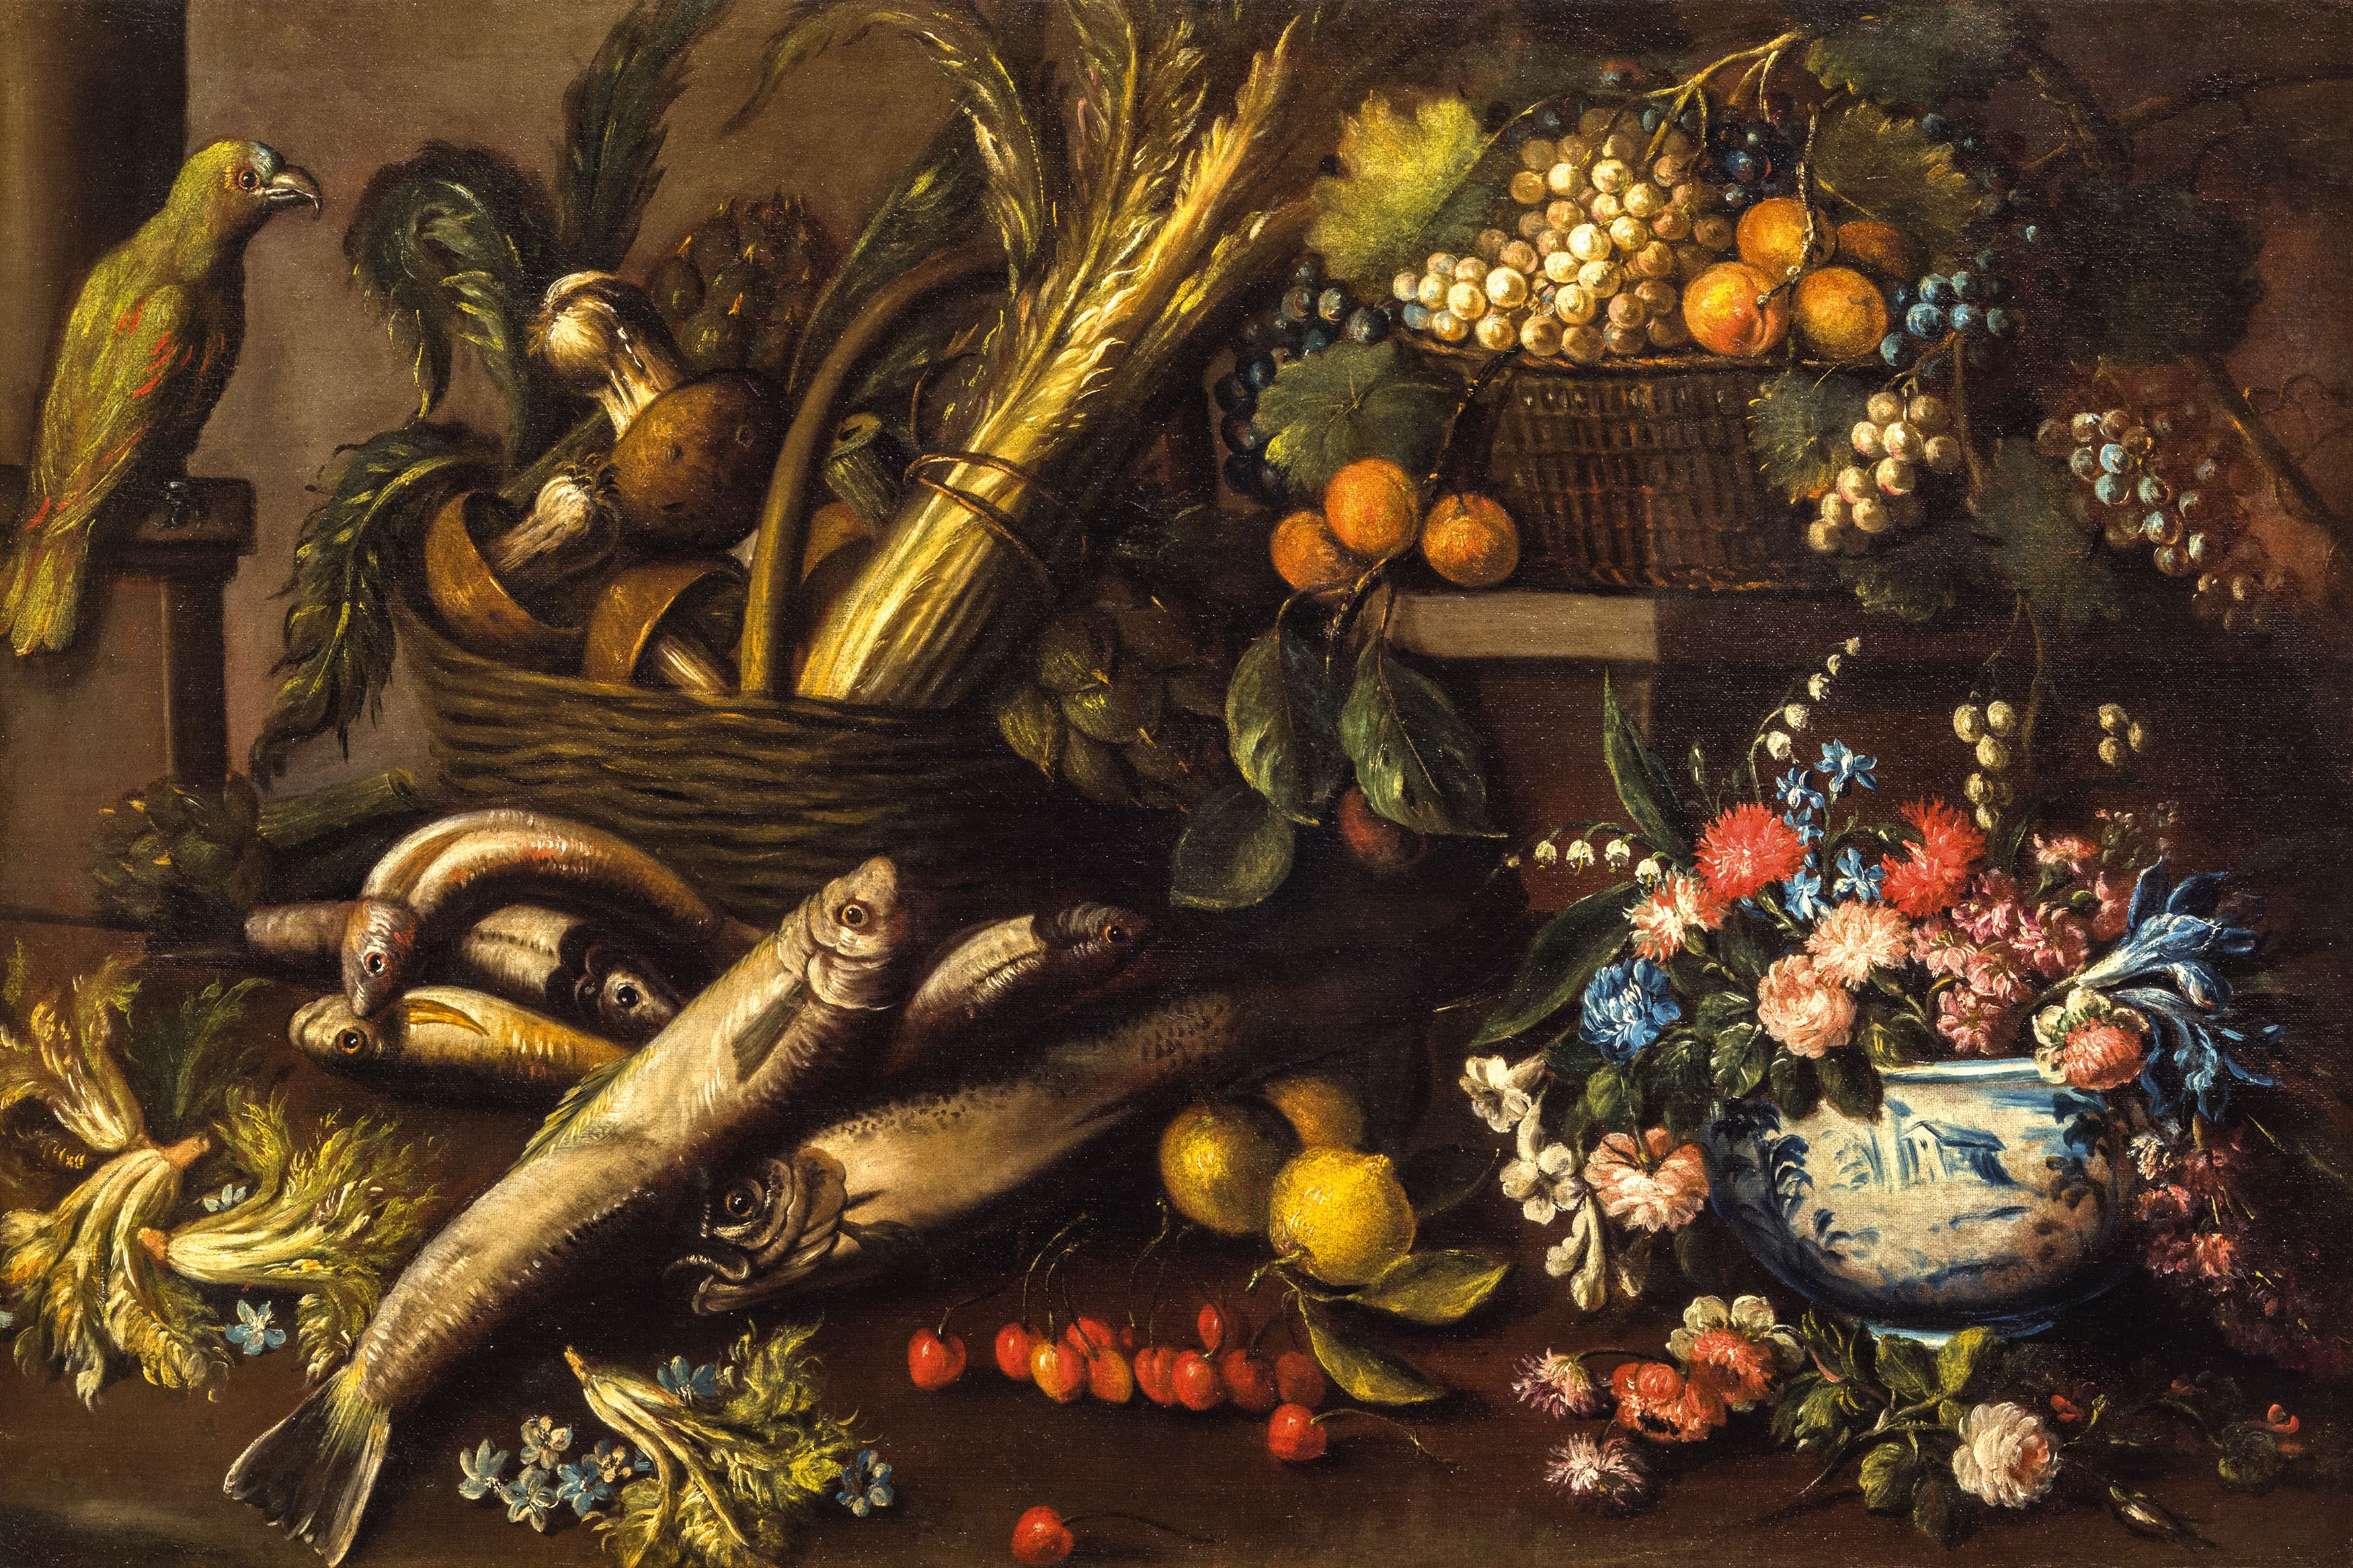 Artwork by Felice Boselli, Natura morta con pesci, fiori, frutta, verdura e un pappagallo, Made of Oil on canvas